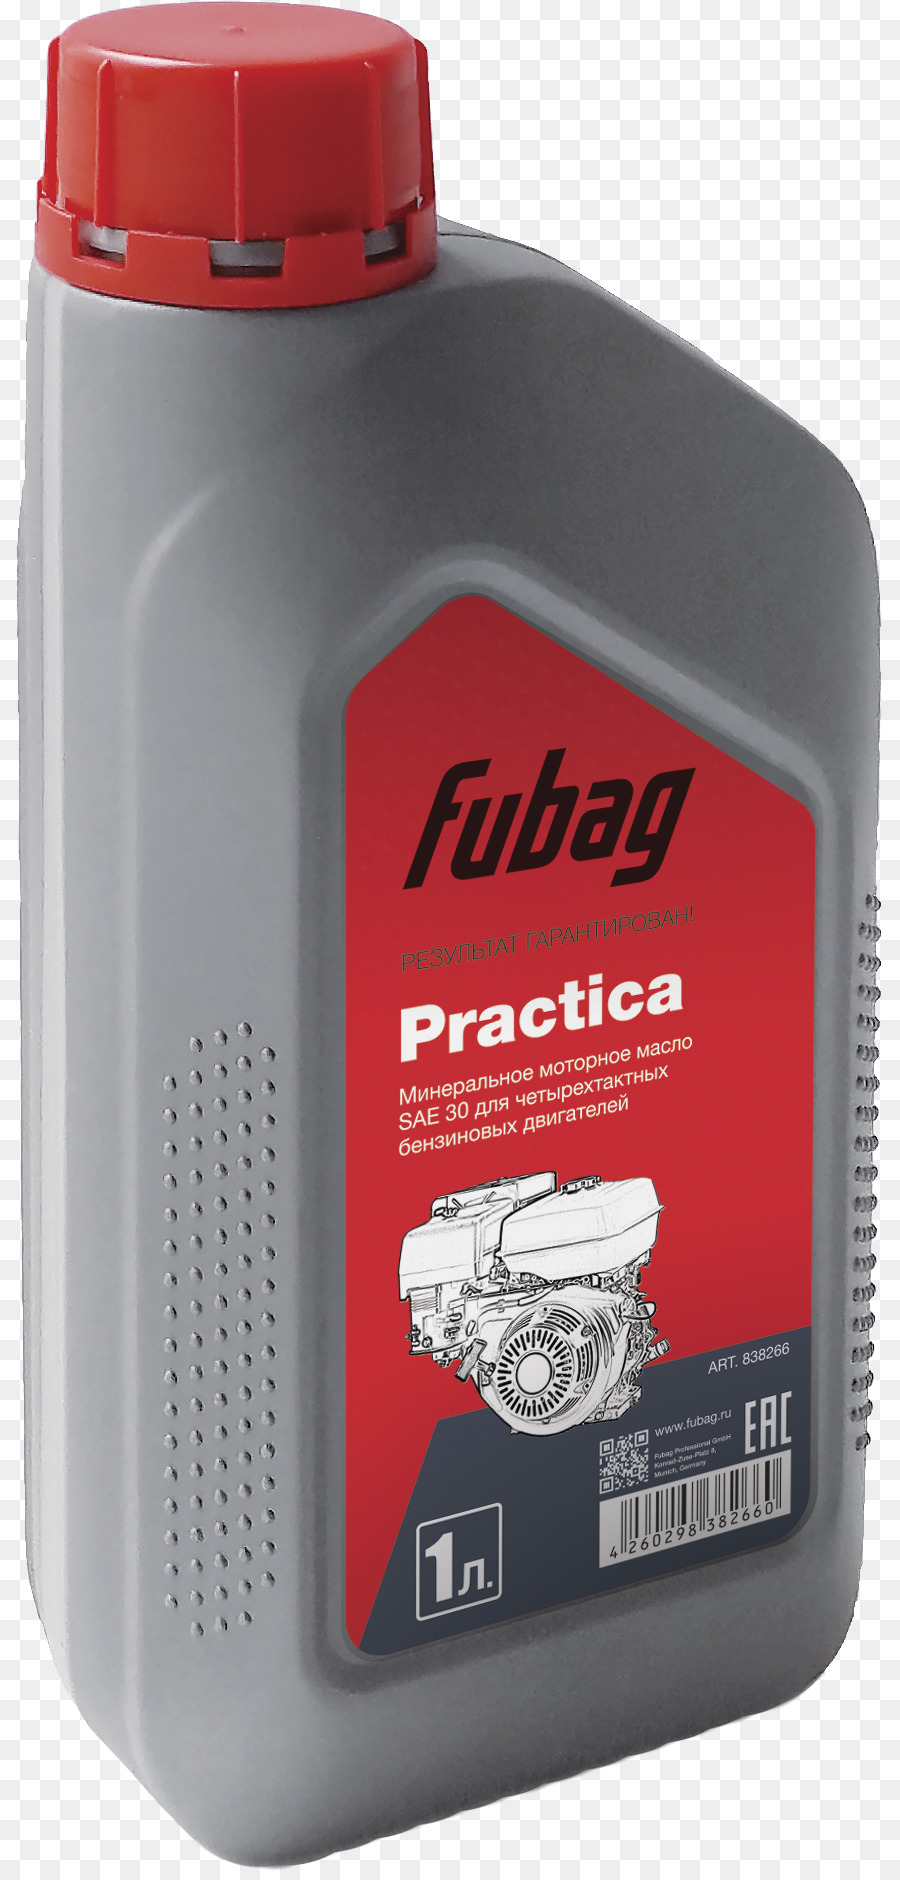 моторное масло，ассортименте продукции Fubag PNG